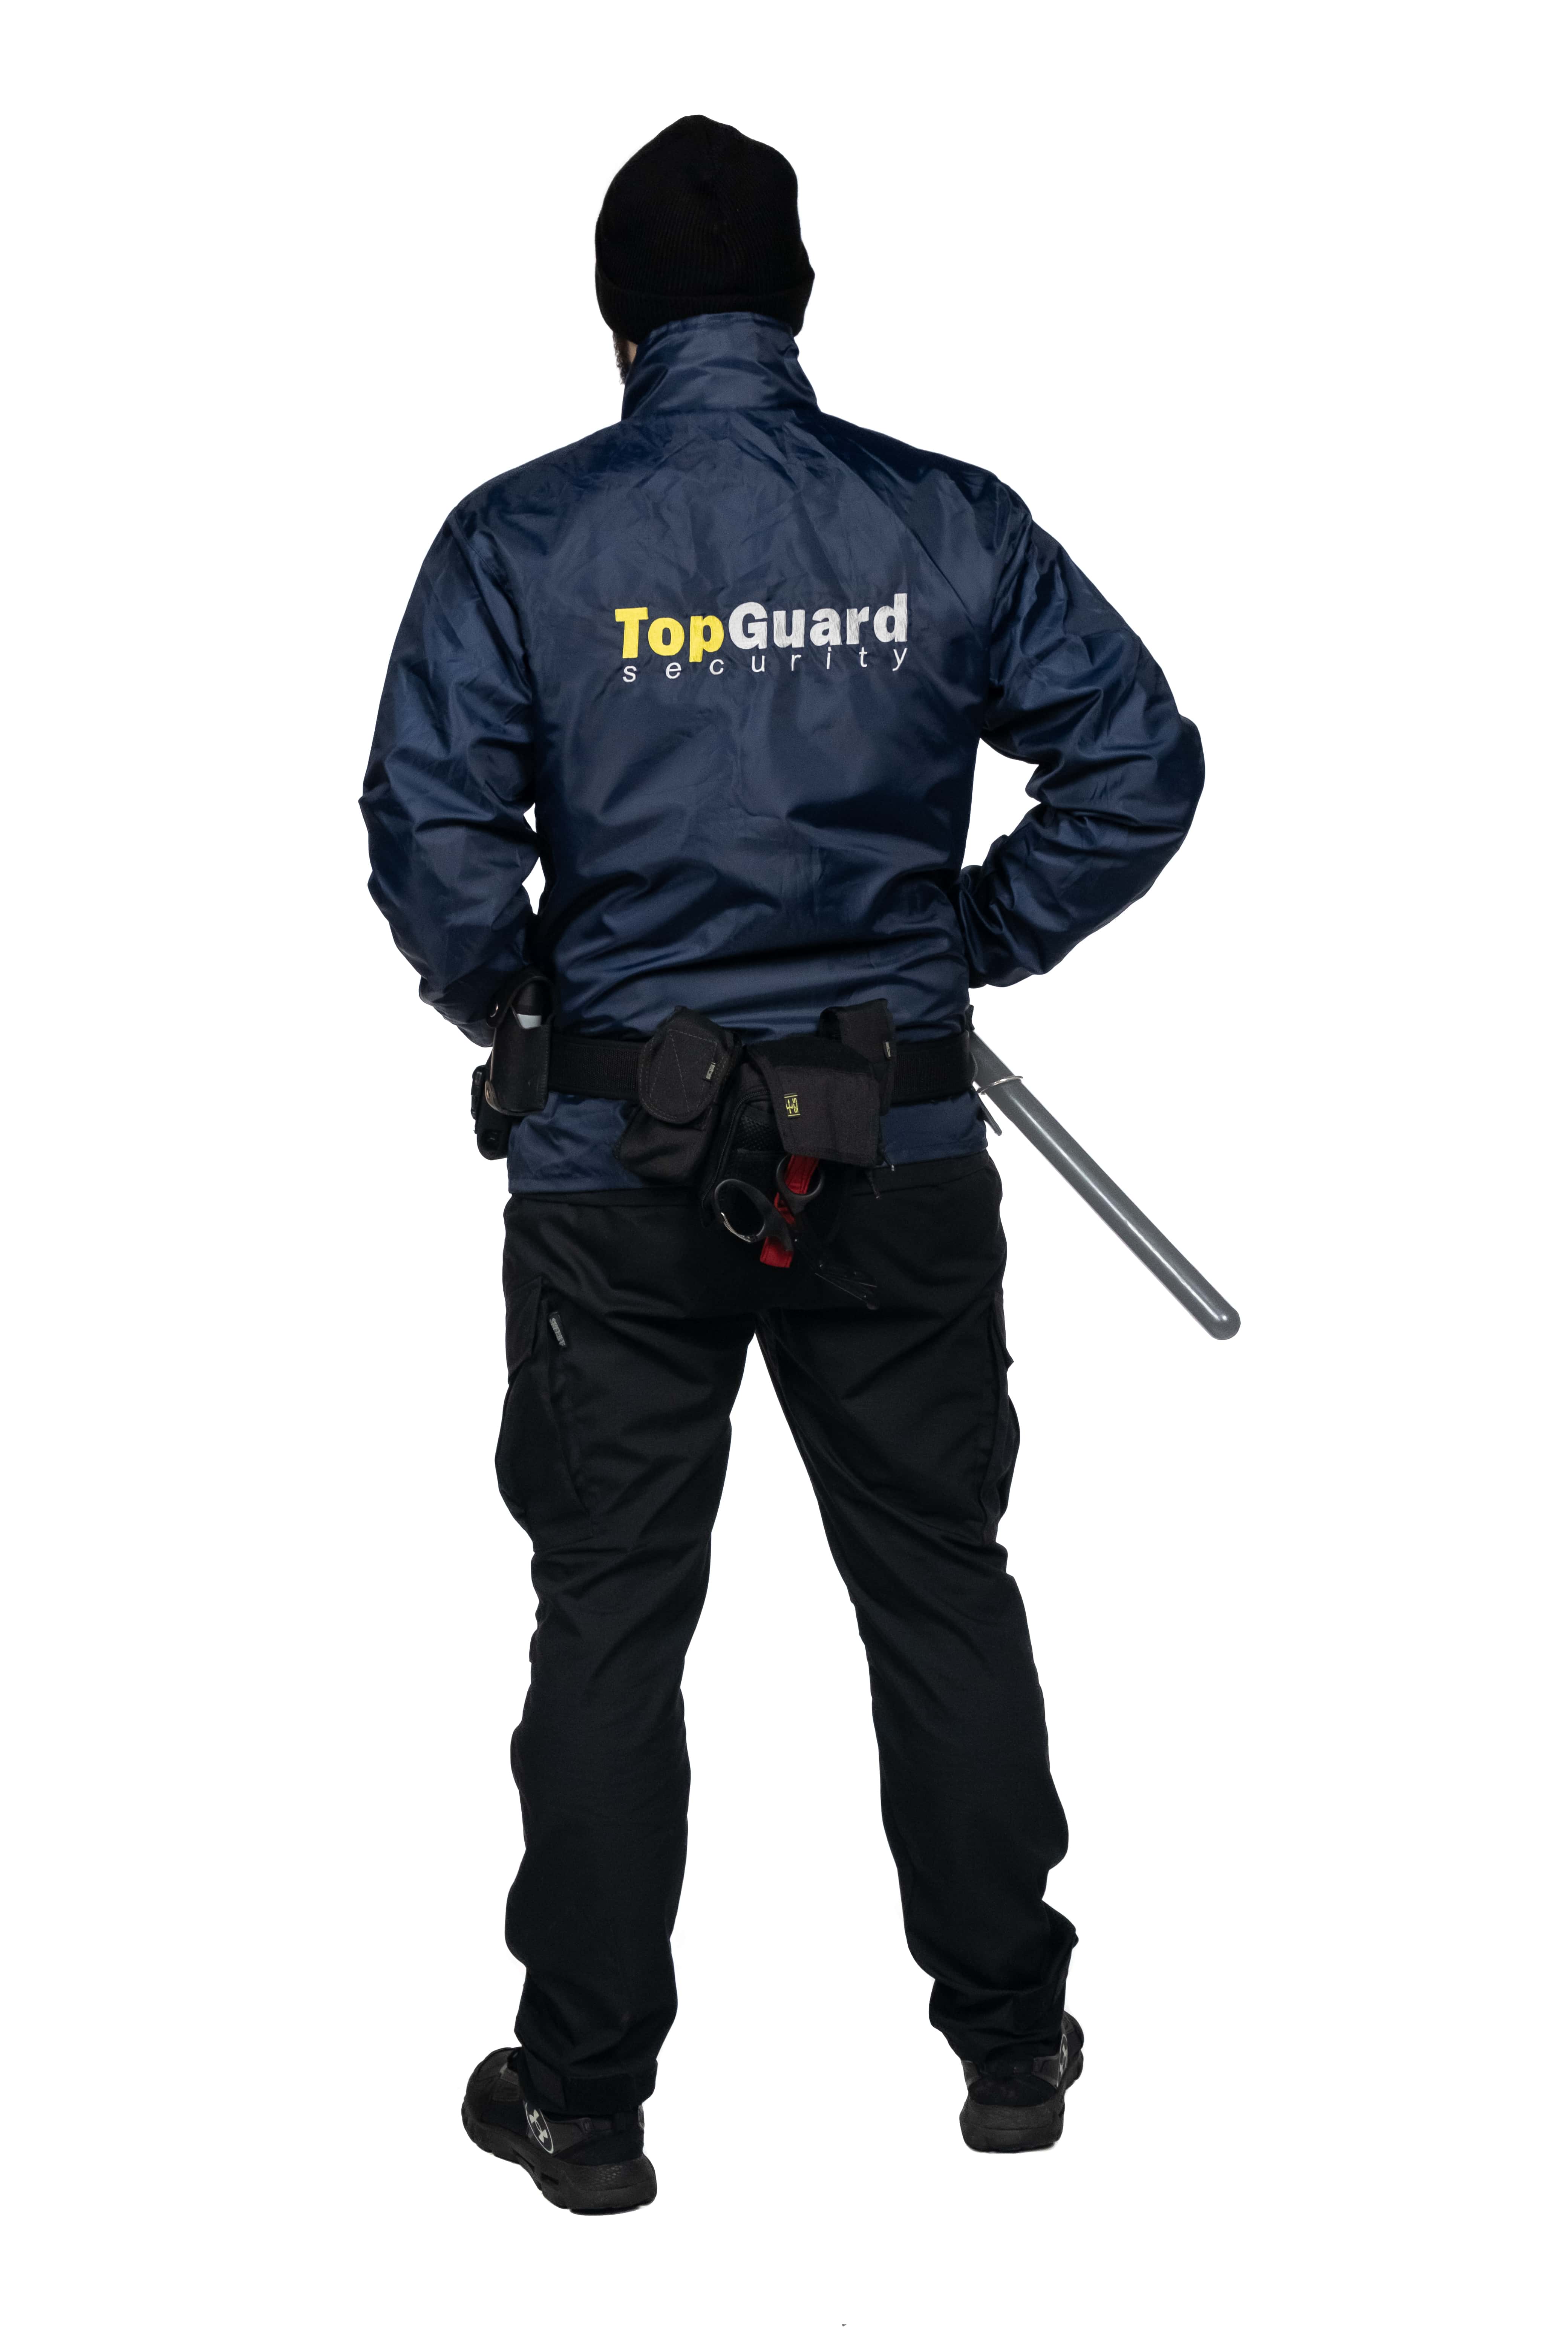 Форма охранника физических объектов. Лето/Осень. ТопГард. Куртка-ветровка и черные тактические брюки.